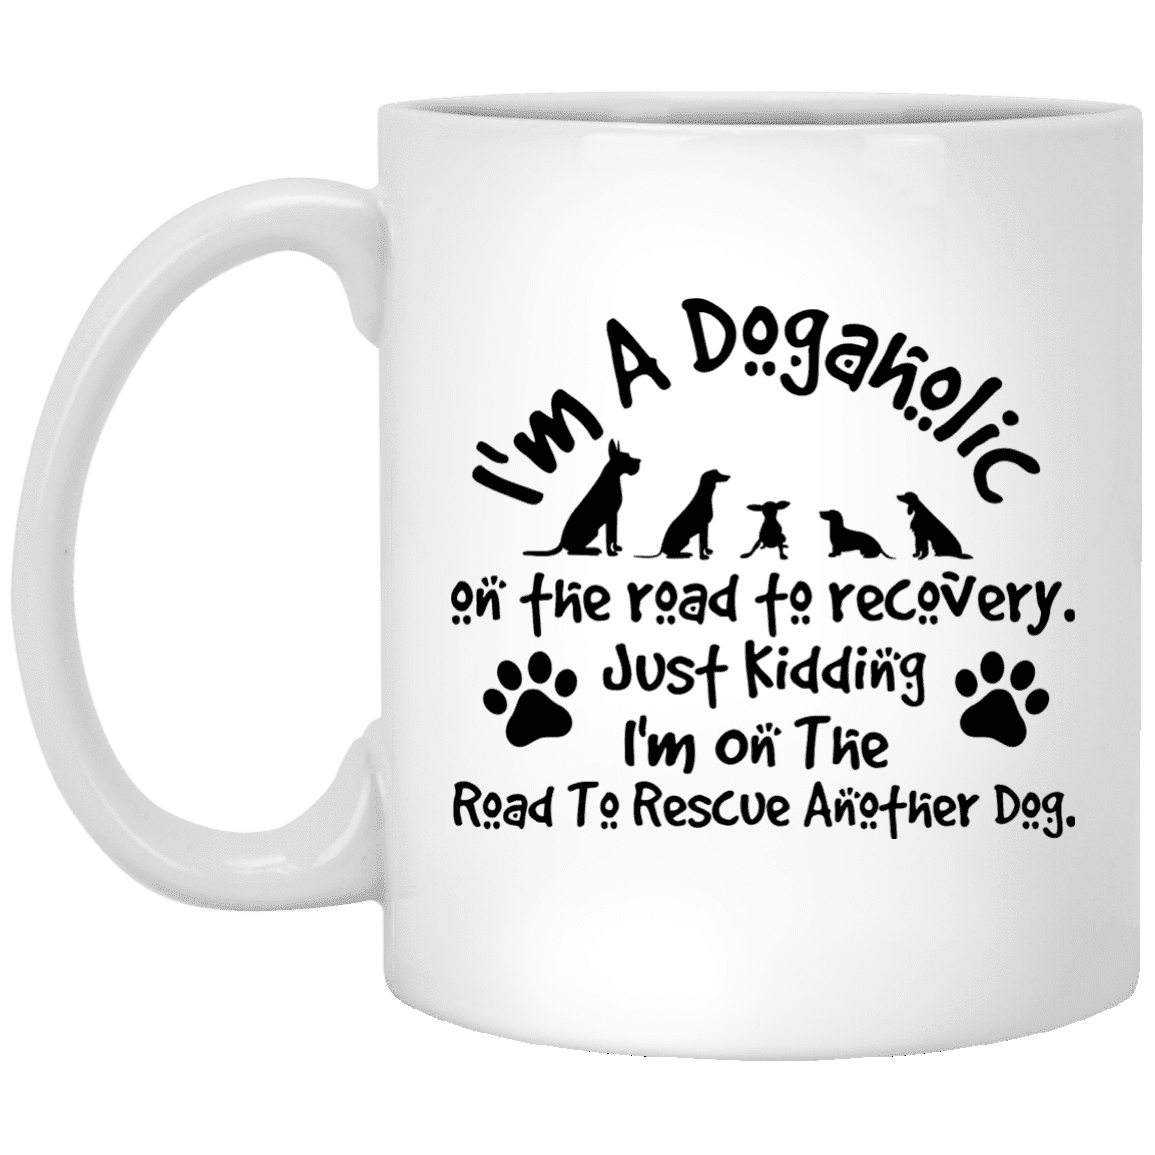 I'm A Dogaholic - Mugs.